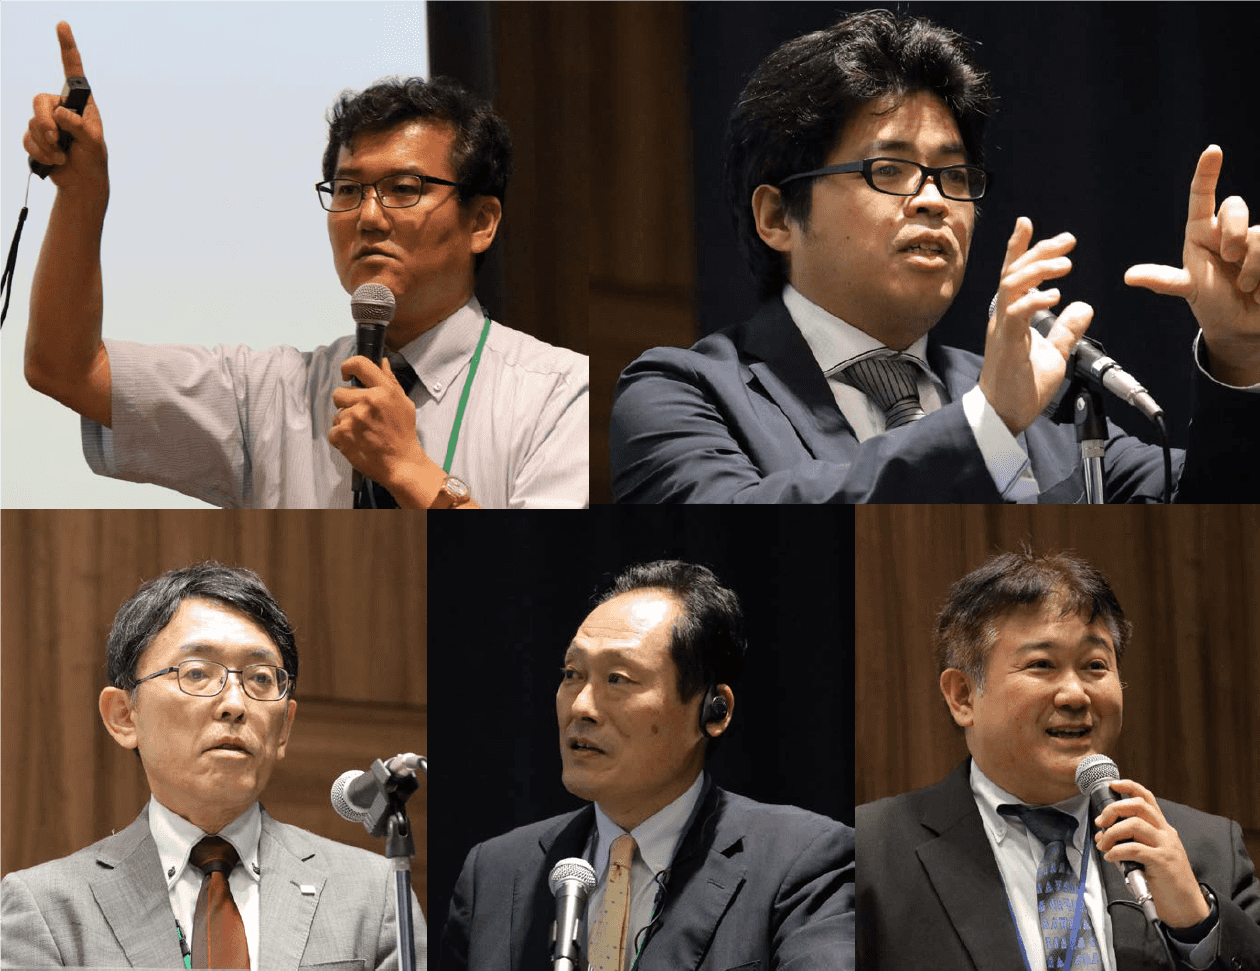 Speakers from the first half of the symposium (Upper half, from left) Mr. Toshiro Obata, Mr. Takayoshi Fukuyo (Bottom half, from left: Mr. Ichiro Naito, Mr. Yoshioki Ozeki, Mr. Takeshi Mizunari)